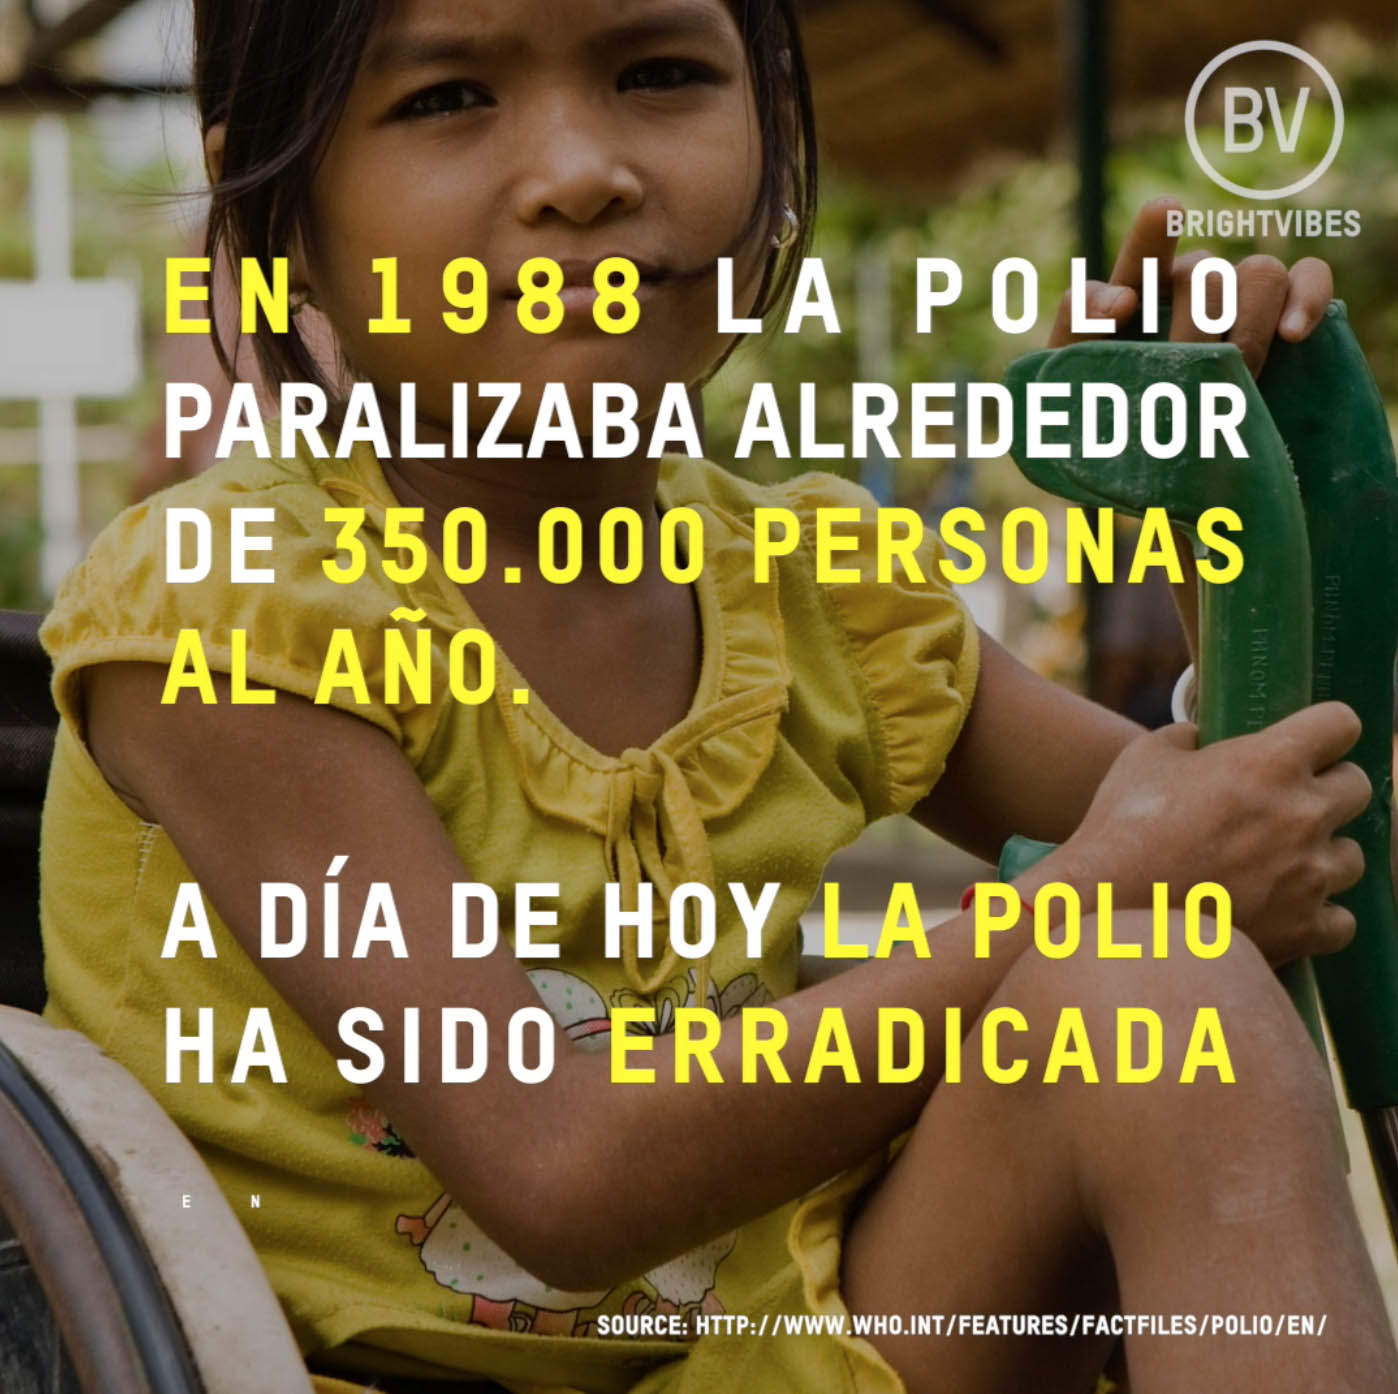 Gracias a los esfuerzos de 20Mil voluntarios más de 3 mil millones de niños han sido vacunados desde hace 28 años. La poliomielitis, en su momento, fue una enfermedad temida en todo el mundo, golpeando de repente y paralizando principalmente a los niños para toda la vida. Gracias a la Iniciativa Mundial para la Erradicación de la Poliomielitis, la mayor asociación público-privada para la salud, la polio se ha reducido en un 99%. La meta de la Iniciativa es llegar a todos los niños con la vacuna contra la poliomielitis y asegurar un mundo libre de polio para las generaciones futuras.